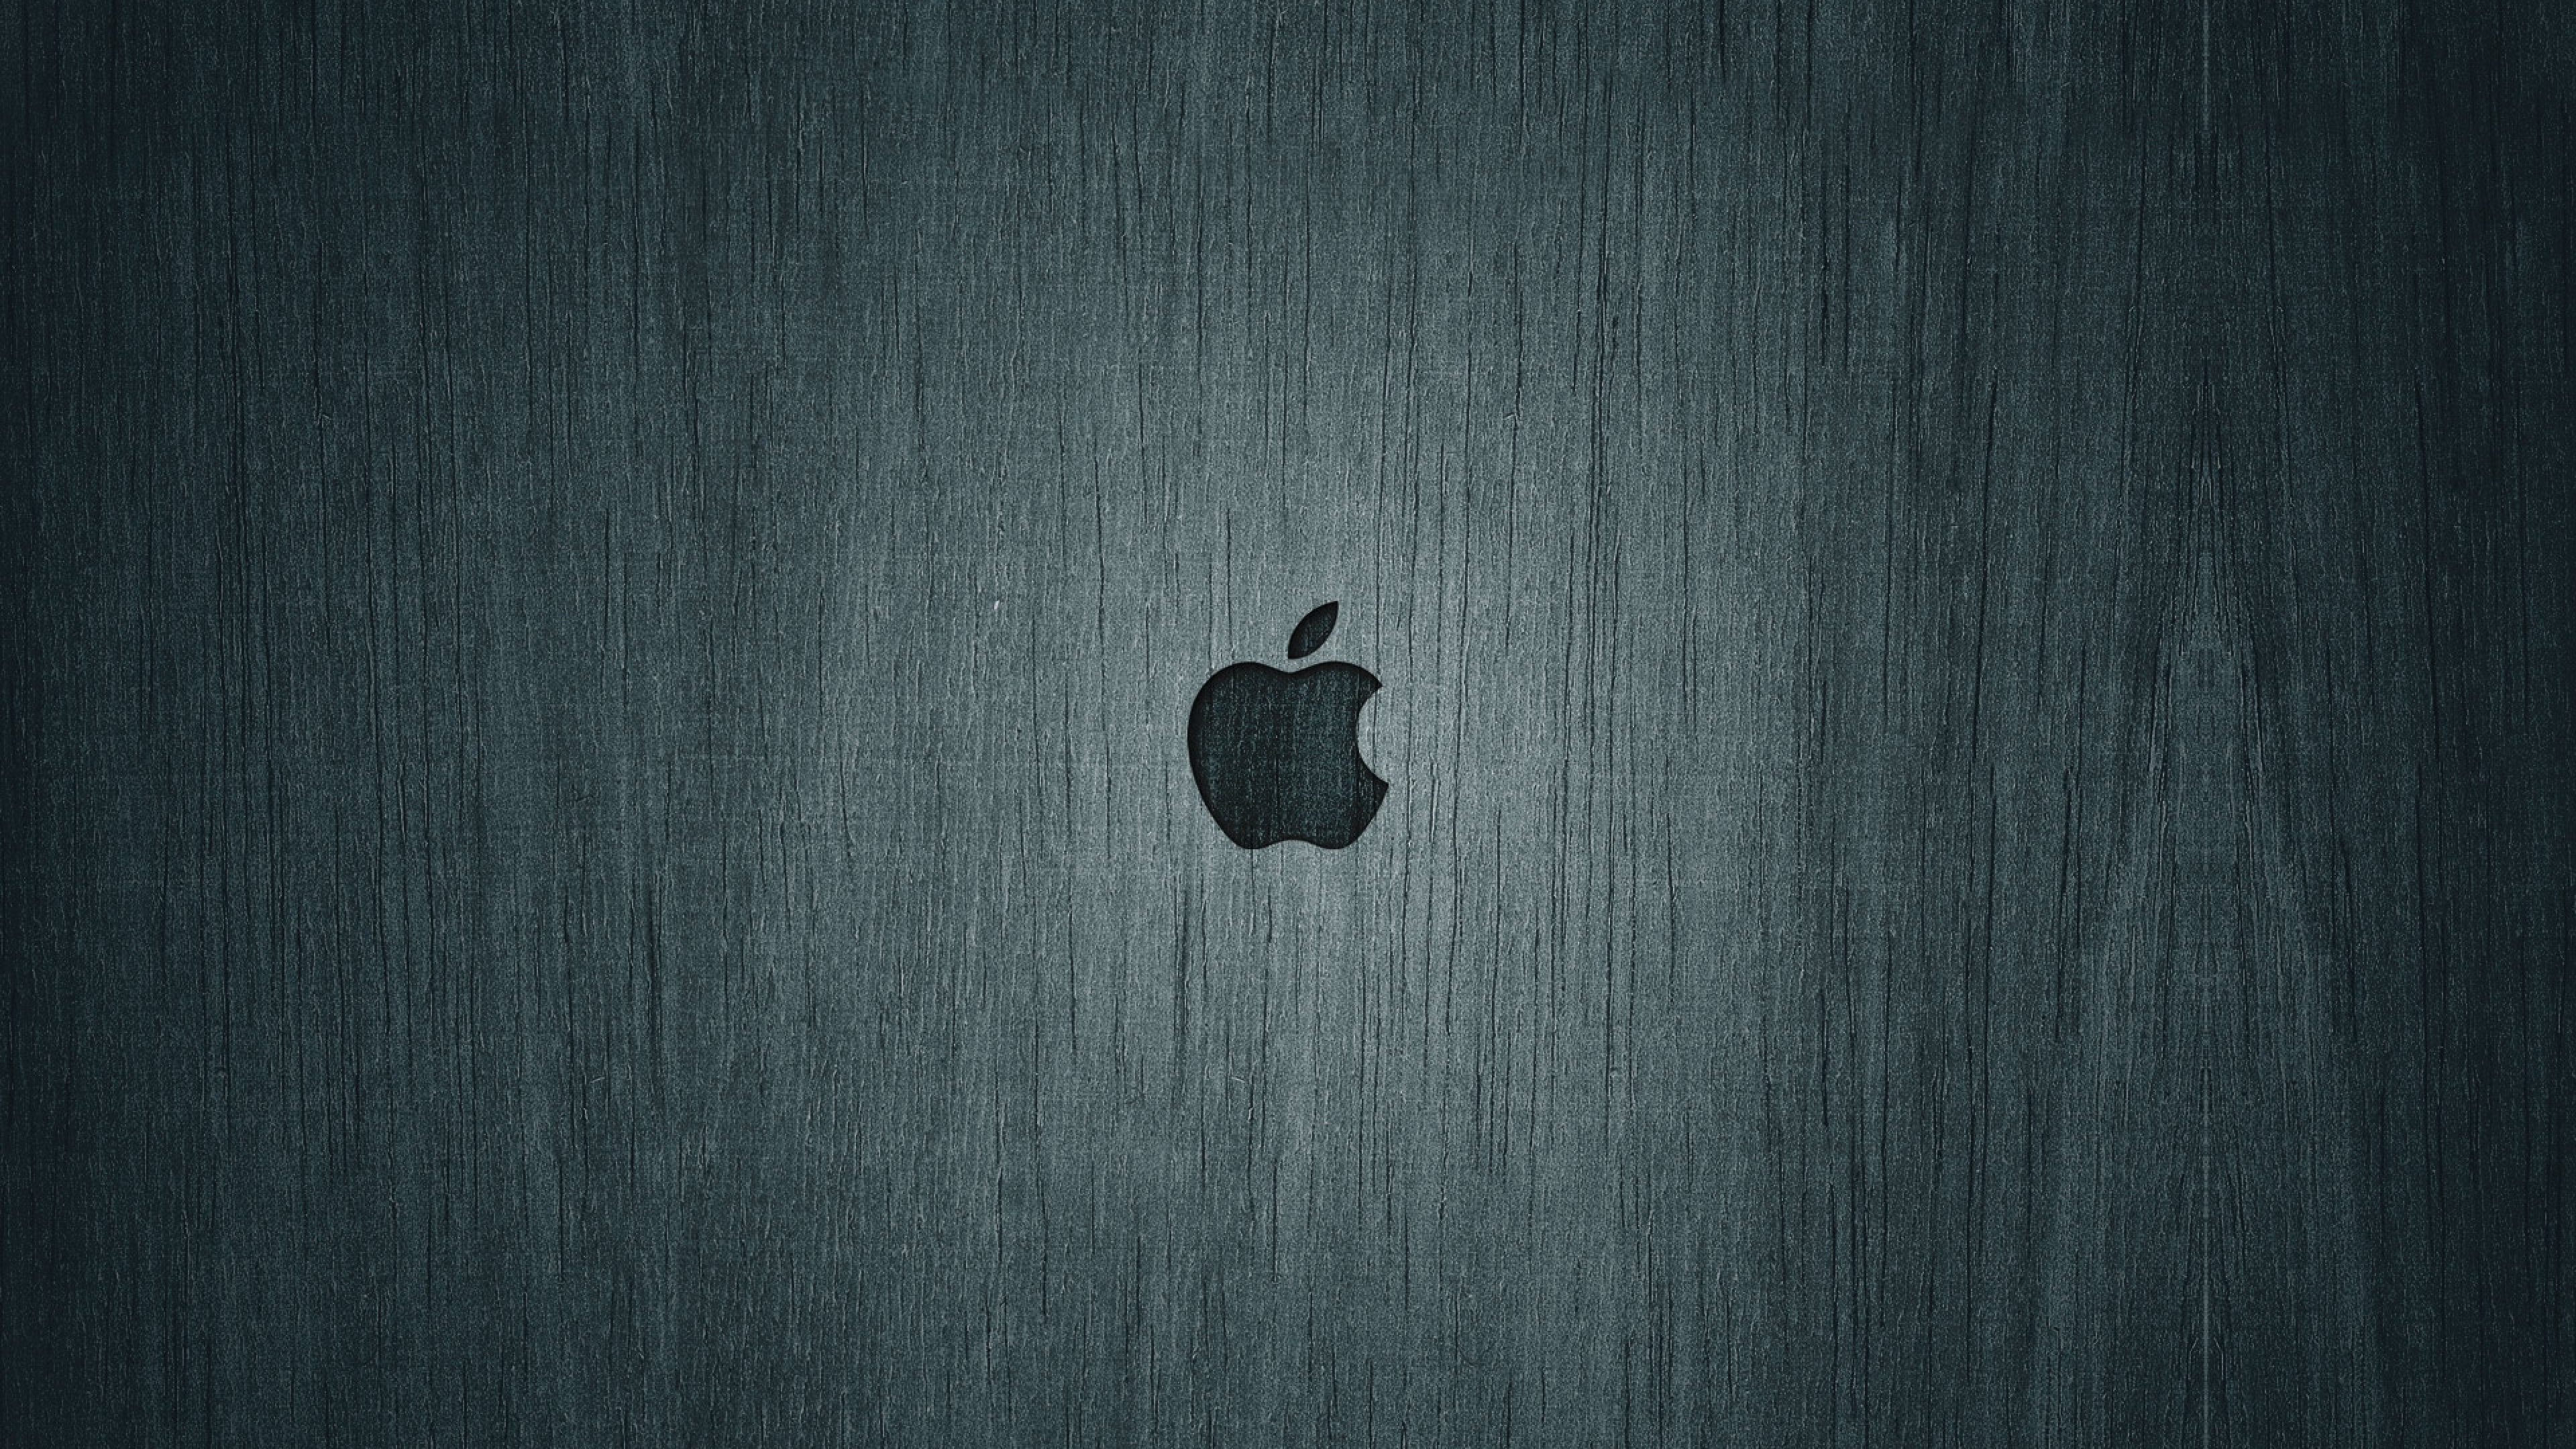 iMac Logo, Apple brand, Black and white, High-resolution wallpaper, 3840x2160 4K Desktop